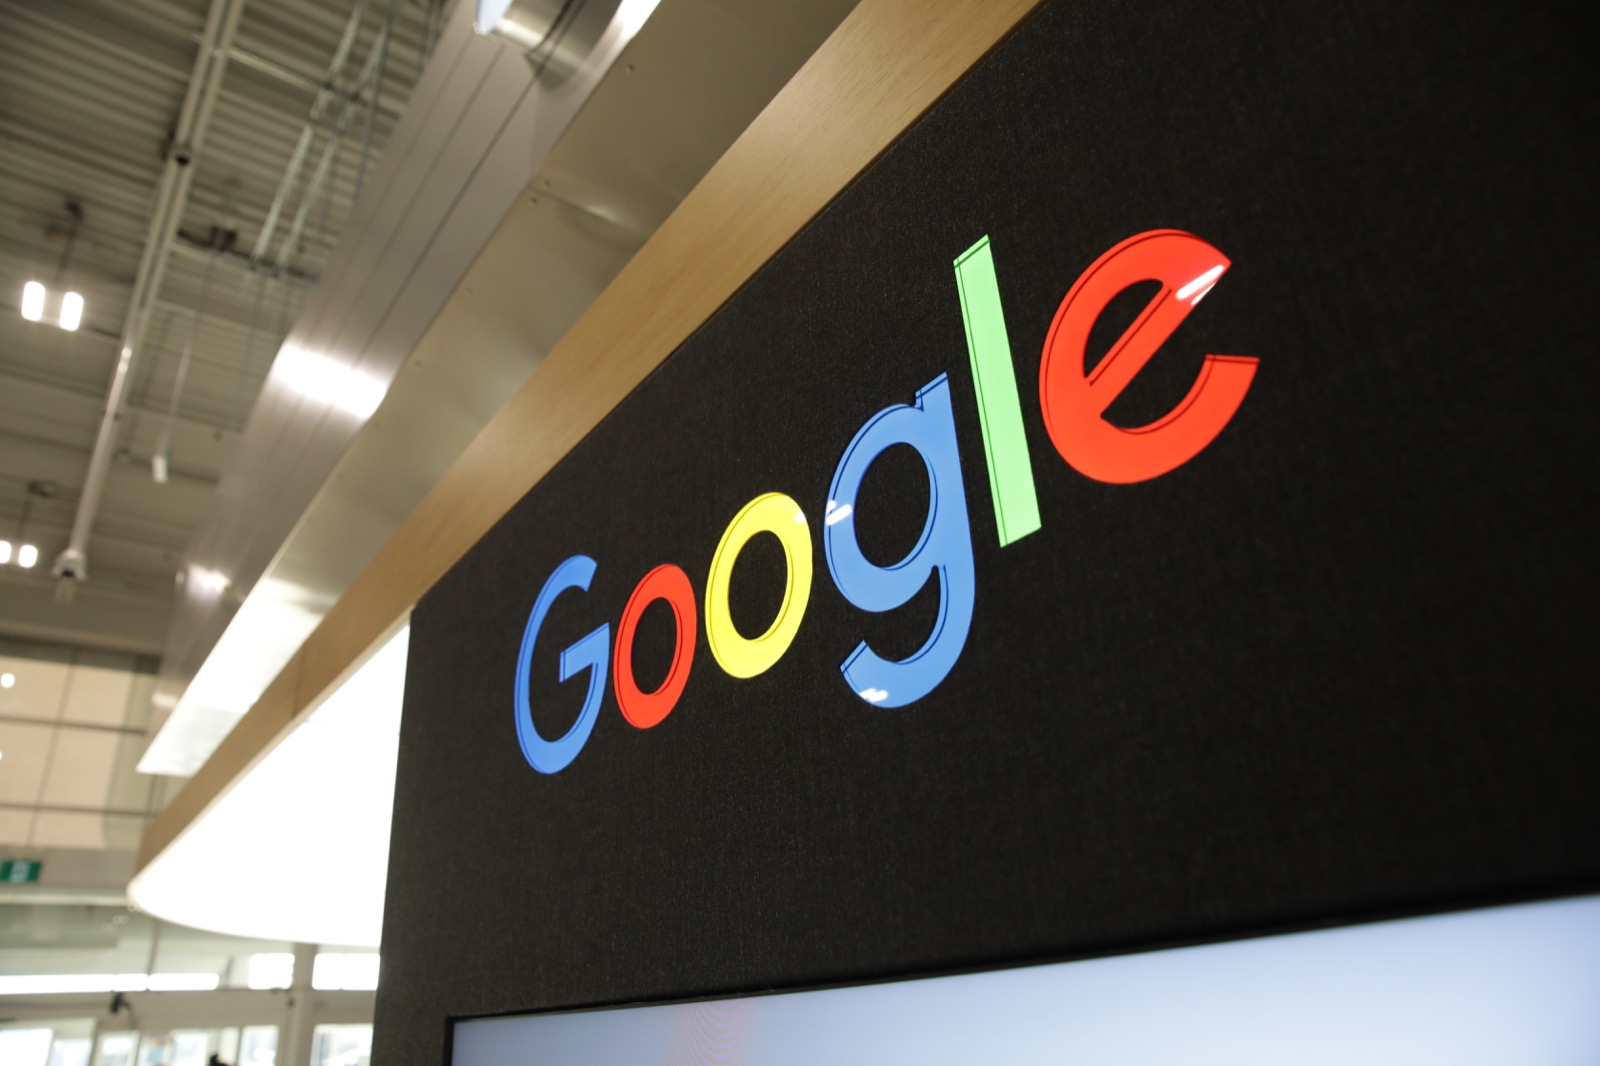 Google đang chuẩn bị cho kế hoạch xây dựng trung tâm nghiên cứu công nghệ tại châu Phi